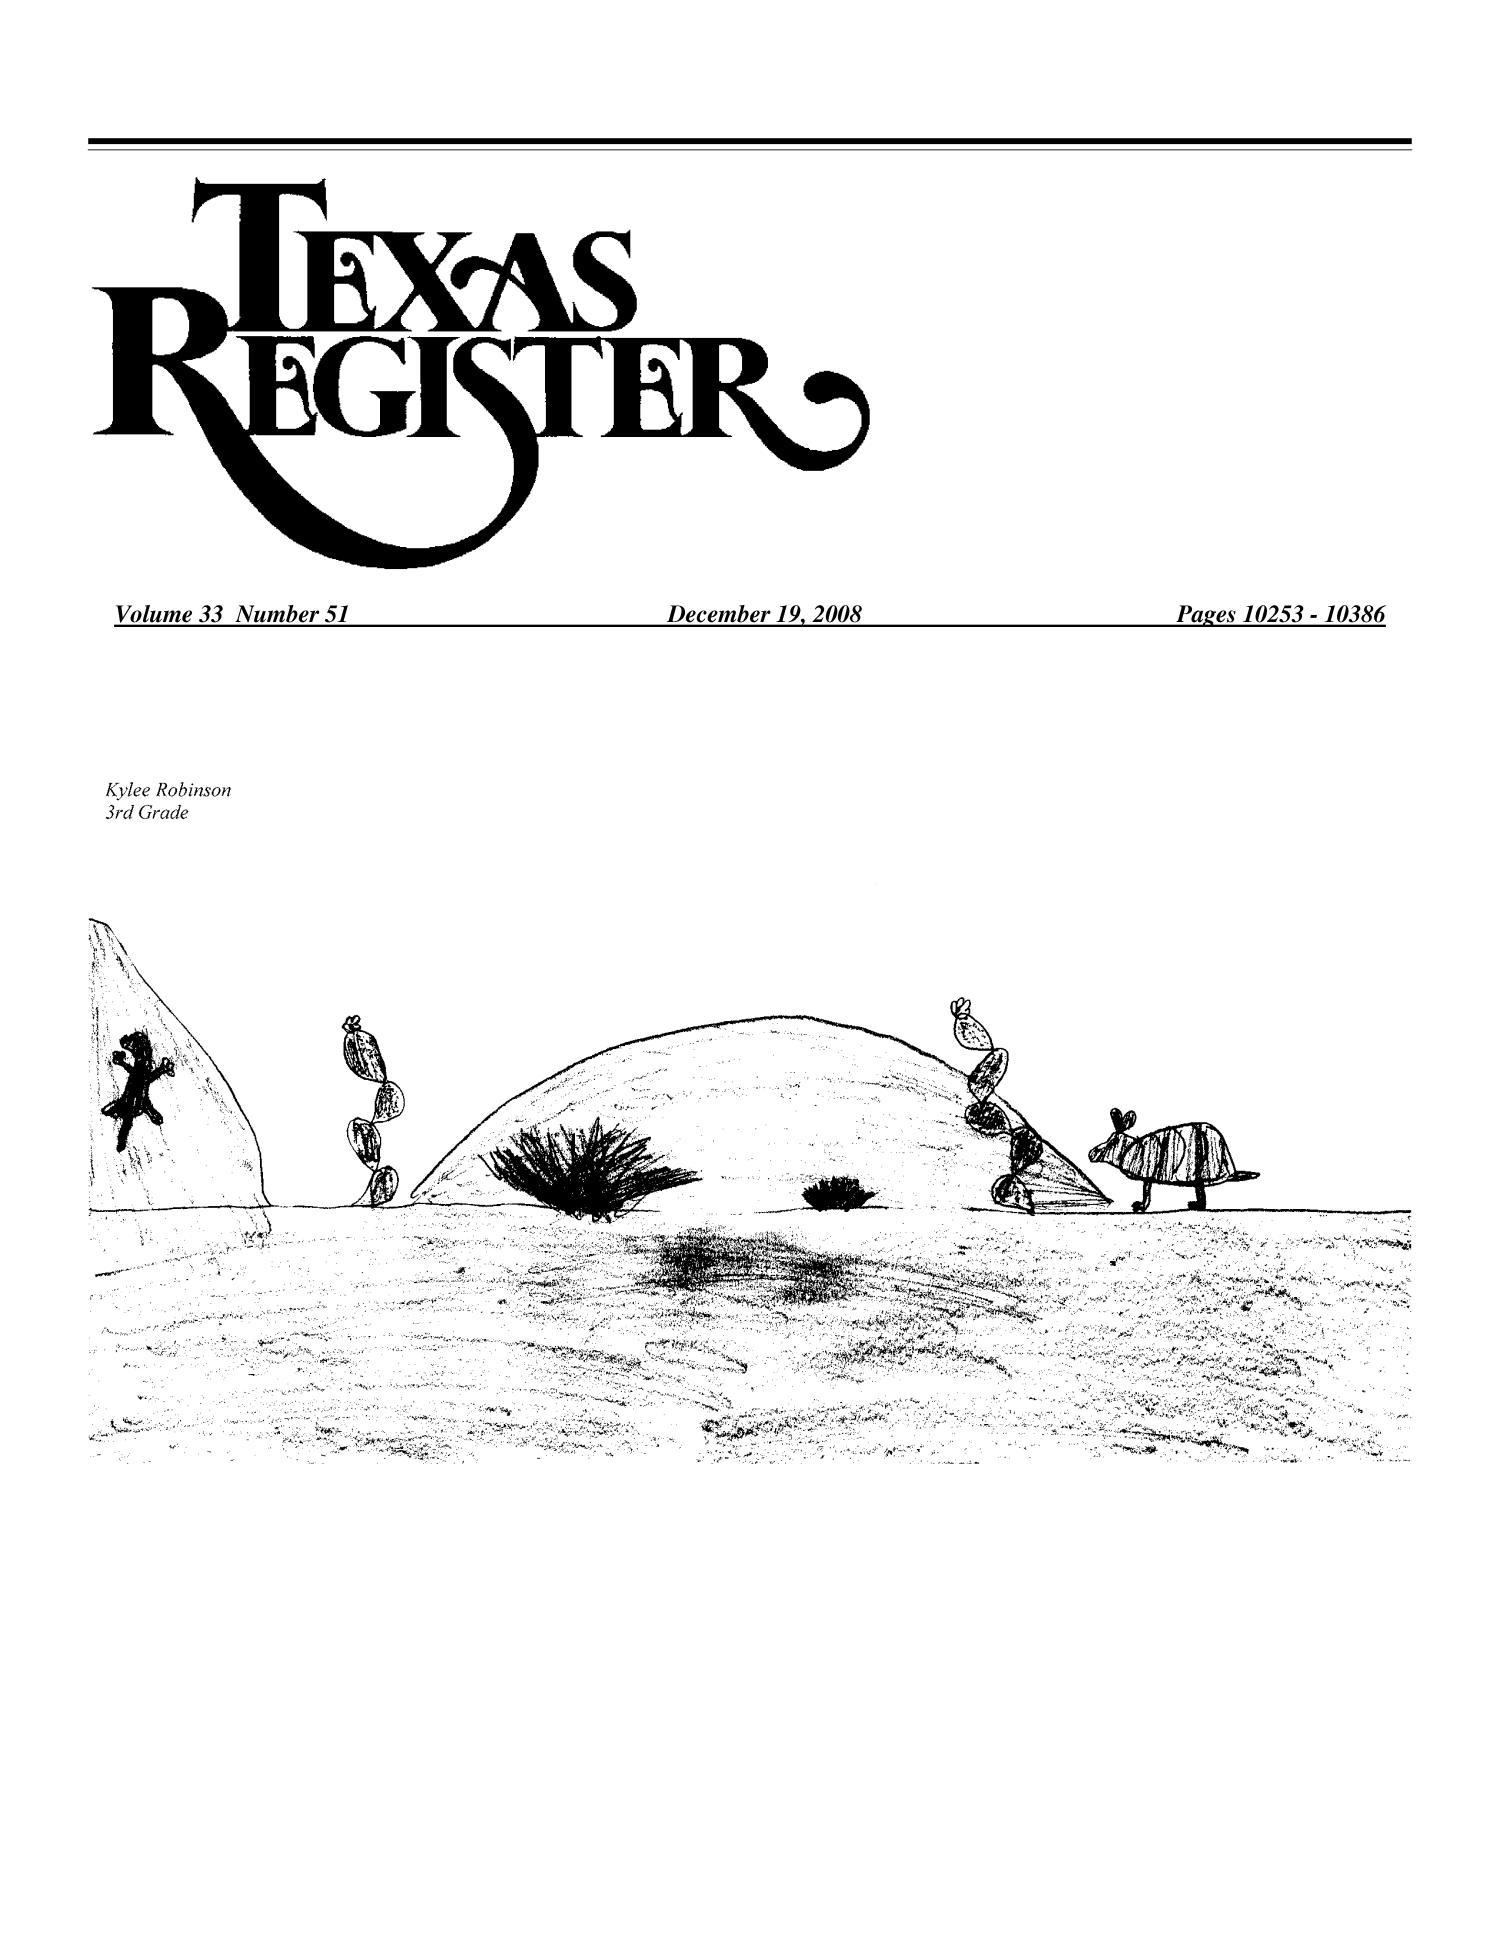 Texas Register, Volume 33, Number 51, Pages 10253-10386, December 19, 2008
                                                
                                                    10253
                                                